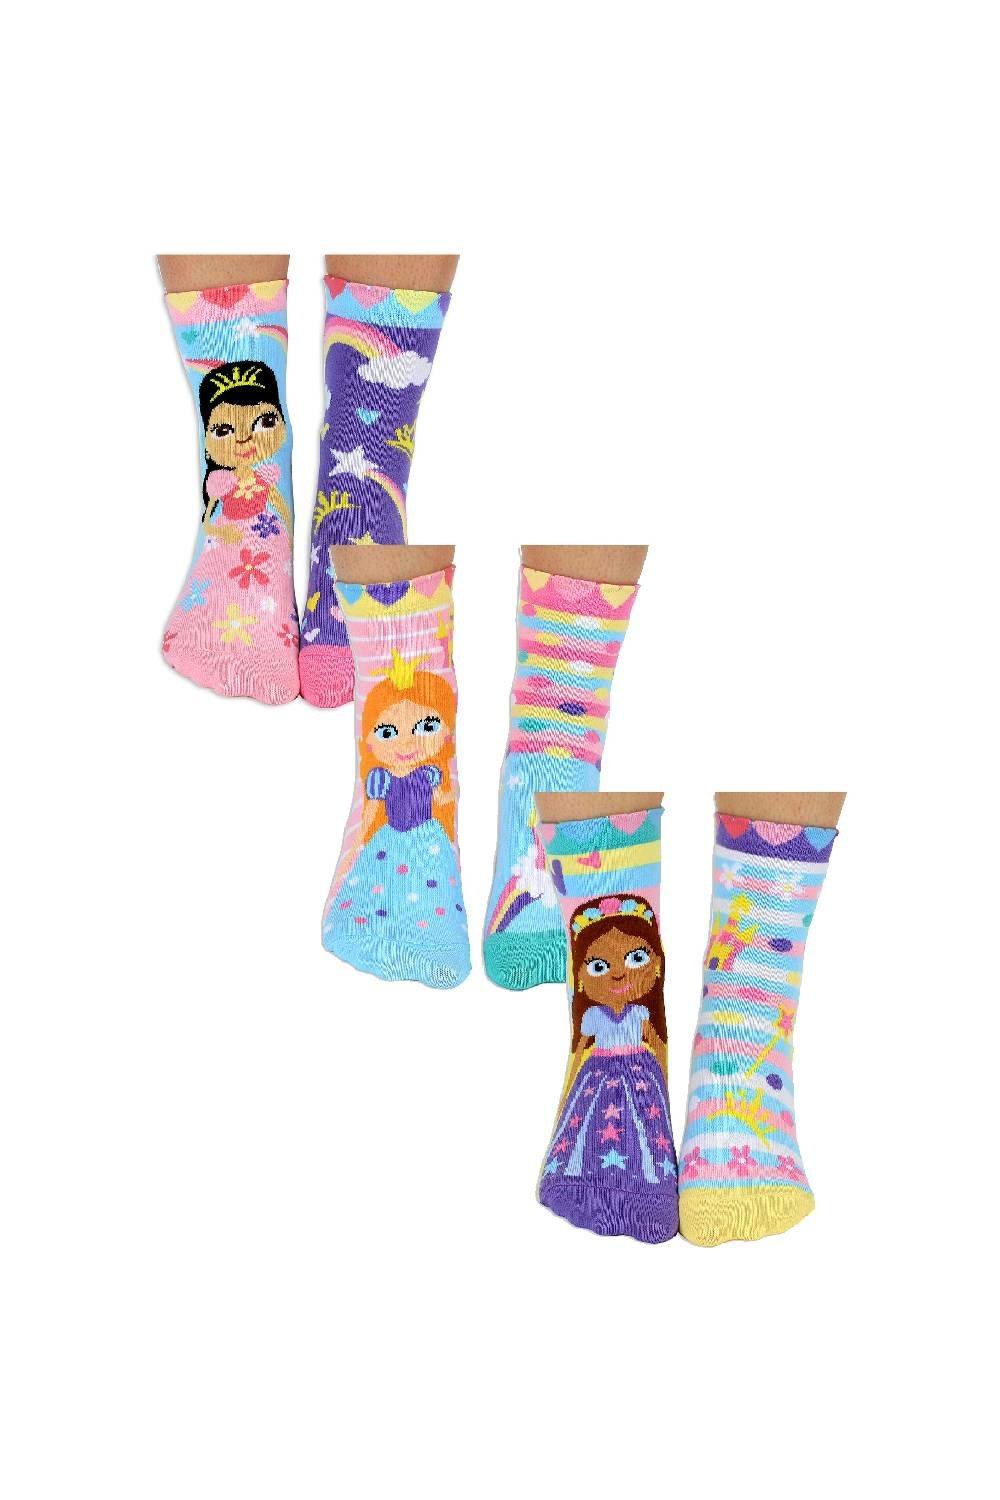 6 Pack Cute Novelty Princess Odd Socks in a Gift Box